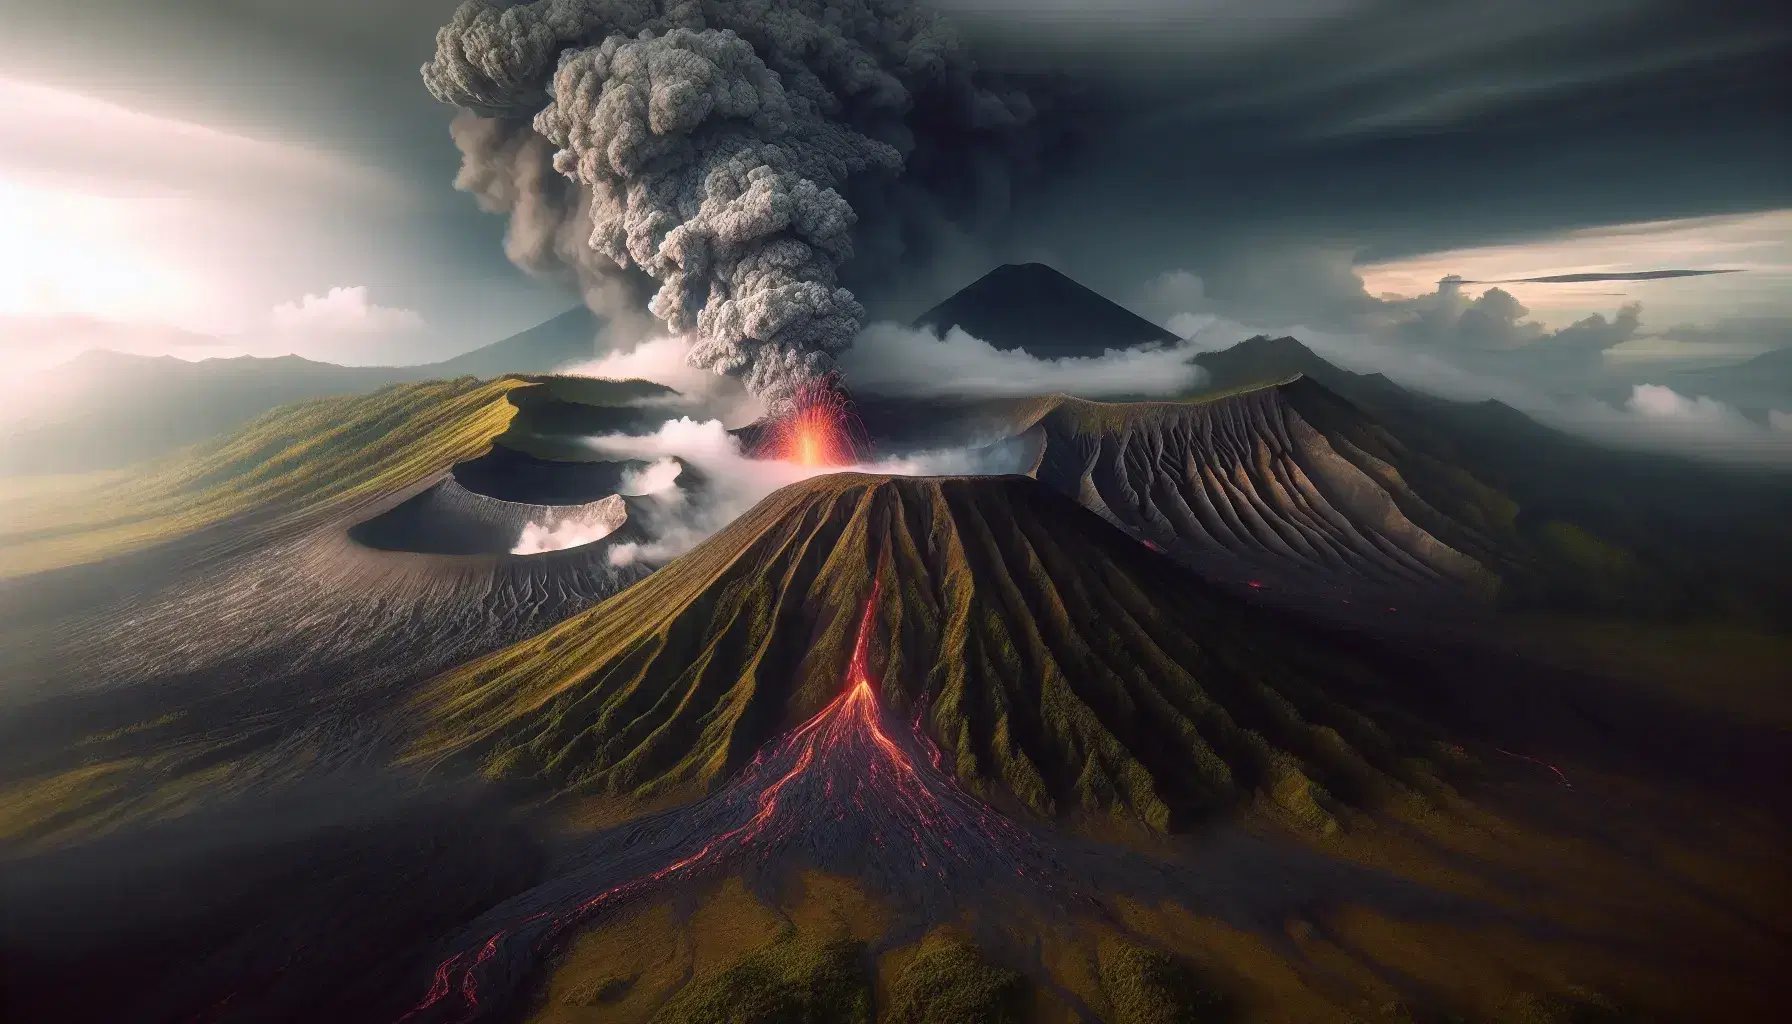 Eruzione vulcanica con colonna di fumo e cenere, flusso di lava incandescente e paesaggio montuoso in lontananza.